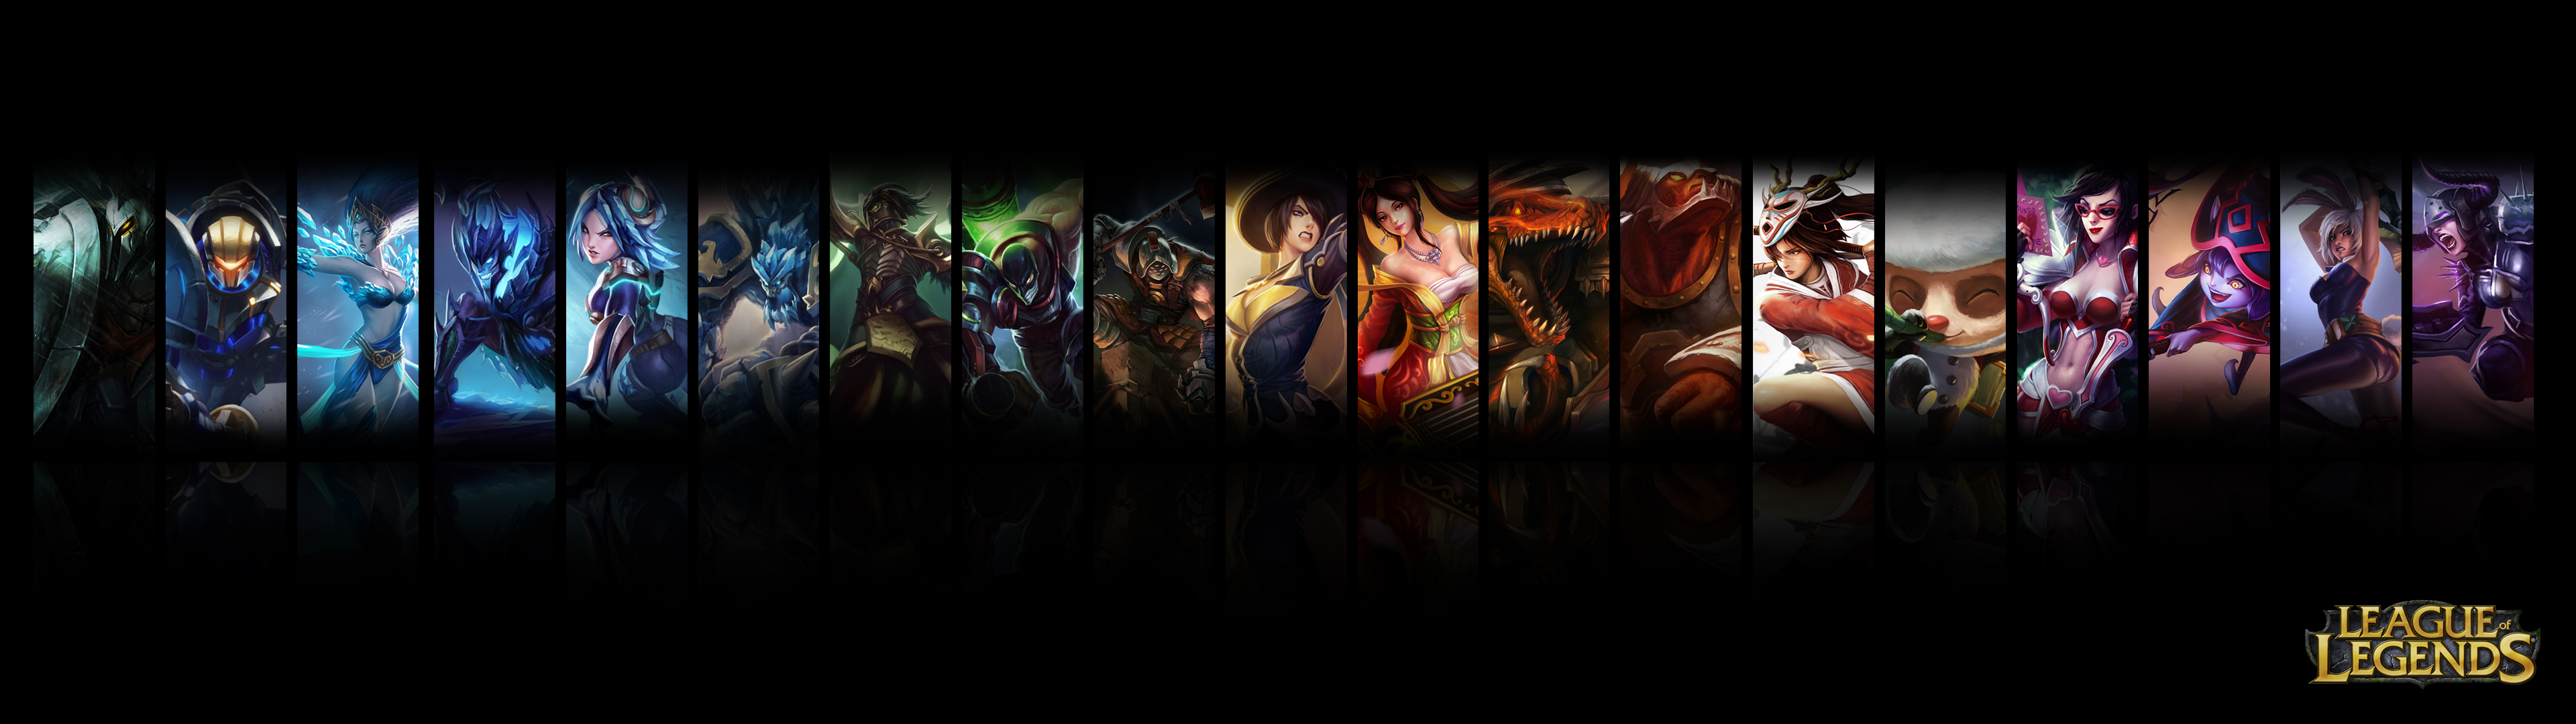 League Of Legends Dual Screen Wallpaper By Jrkdo Fan Art